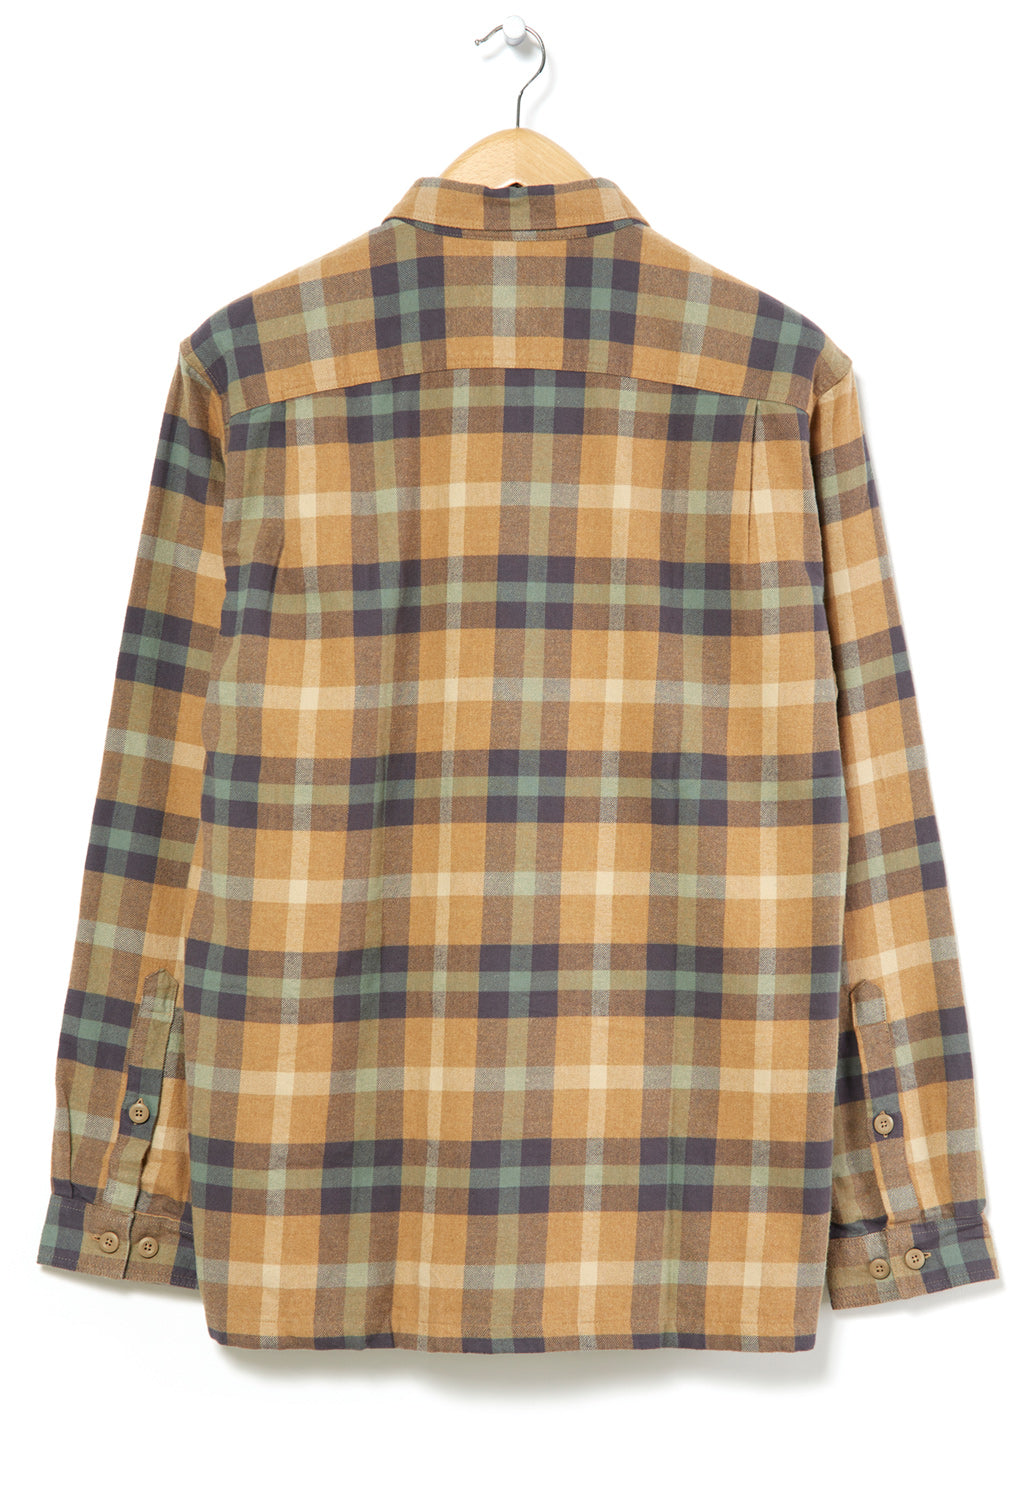 Patagonia Men's Organic Long Sleeve Flannel Shirt - Mojave Khaki/Forage